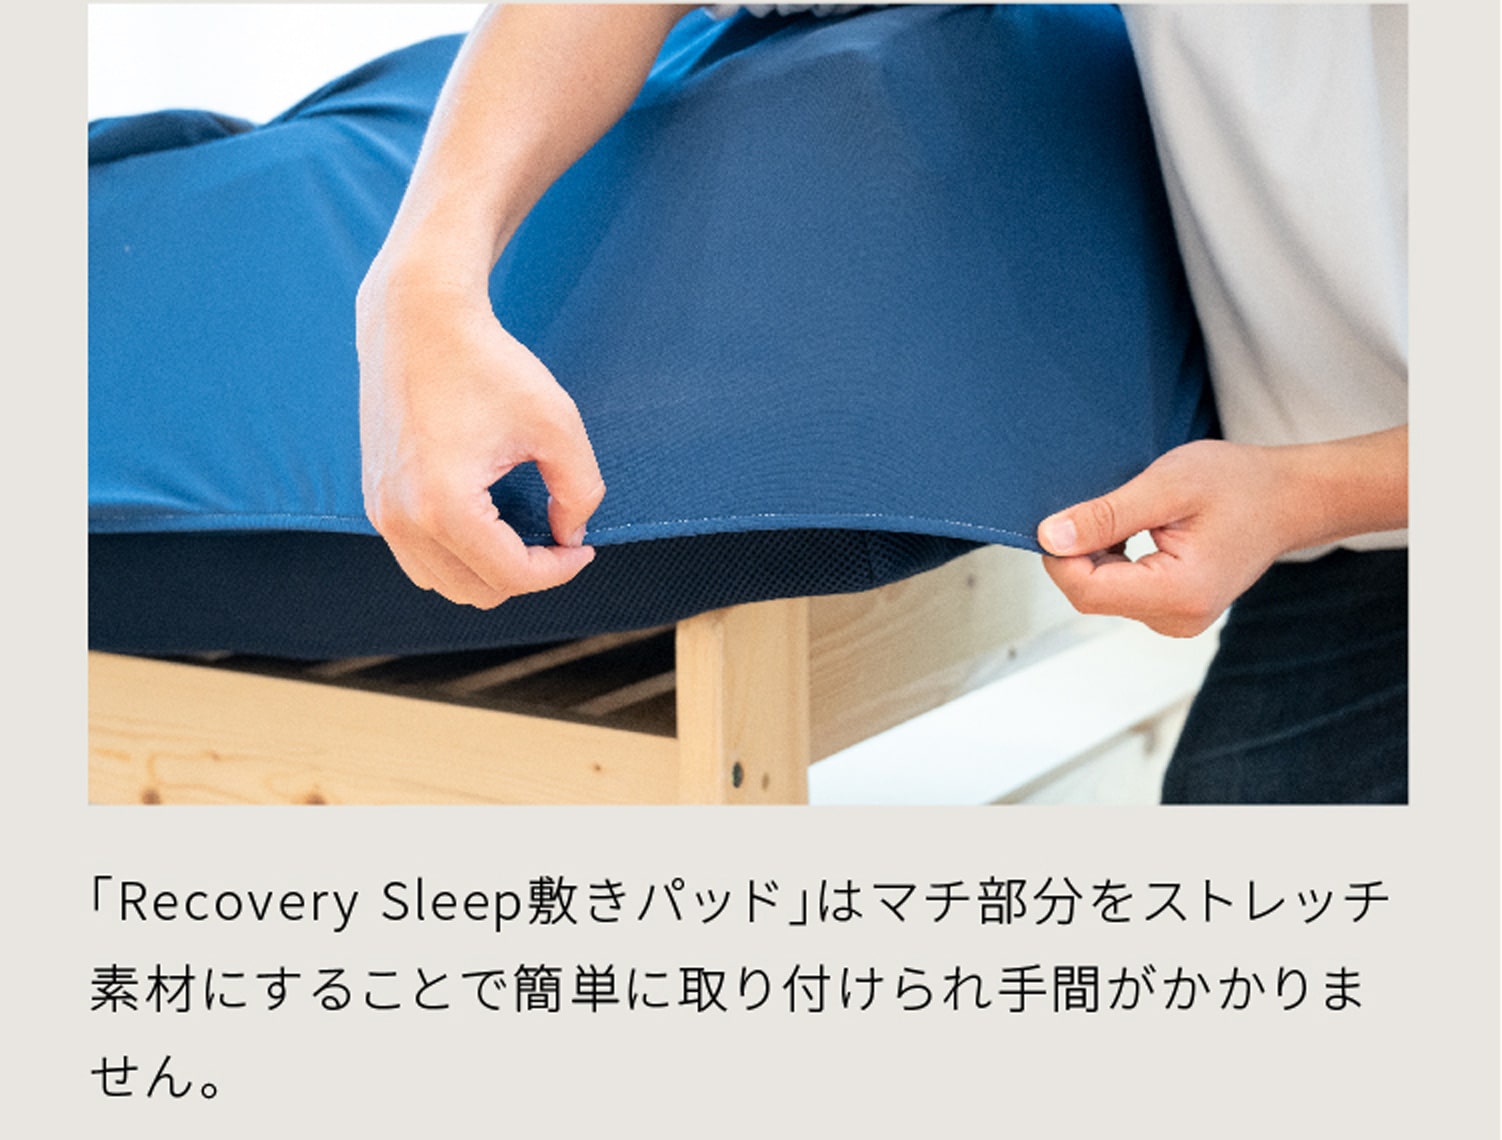 「Recovery Sleep敷きパッド」はマチ部分をストレッチ素材にすることで簡単に取り付けられ手間がかかりません。